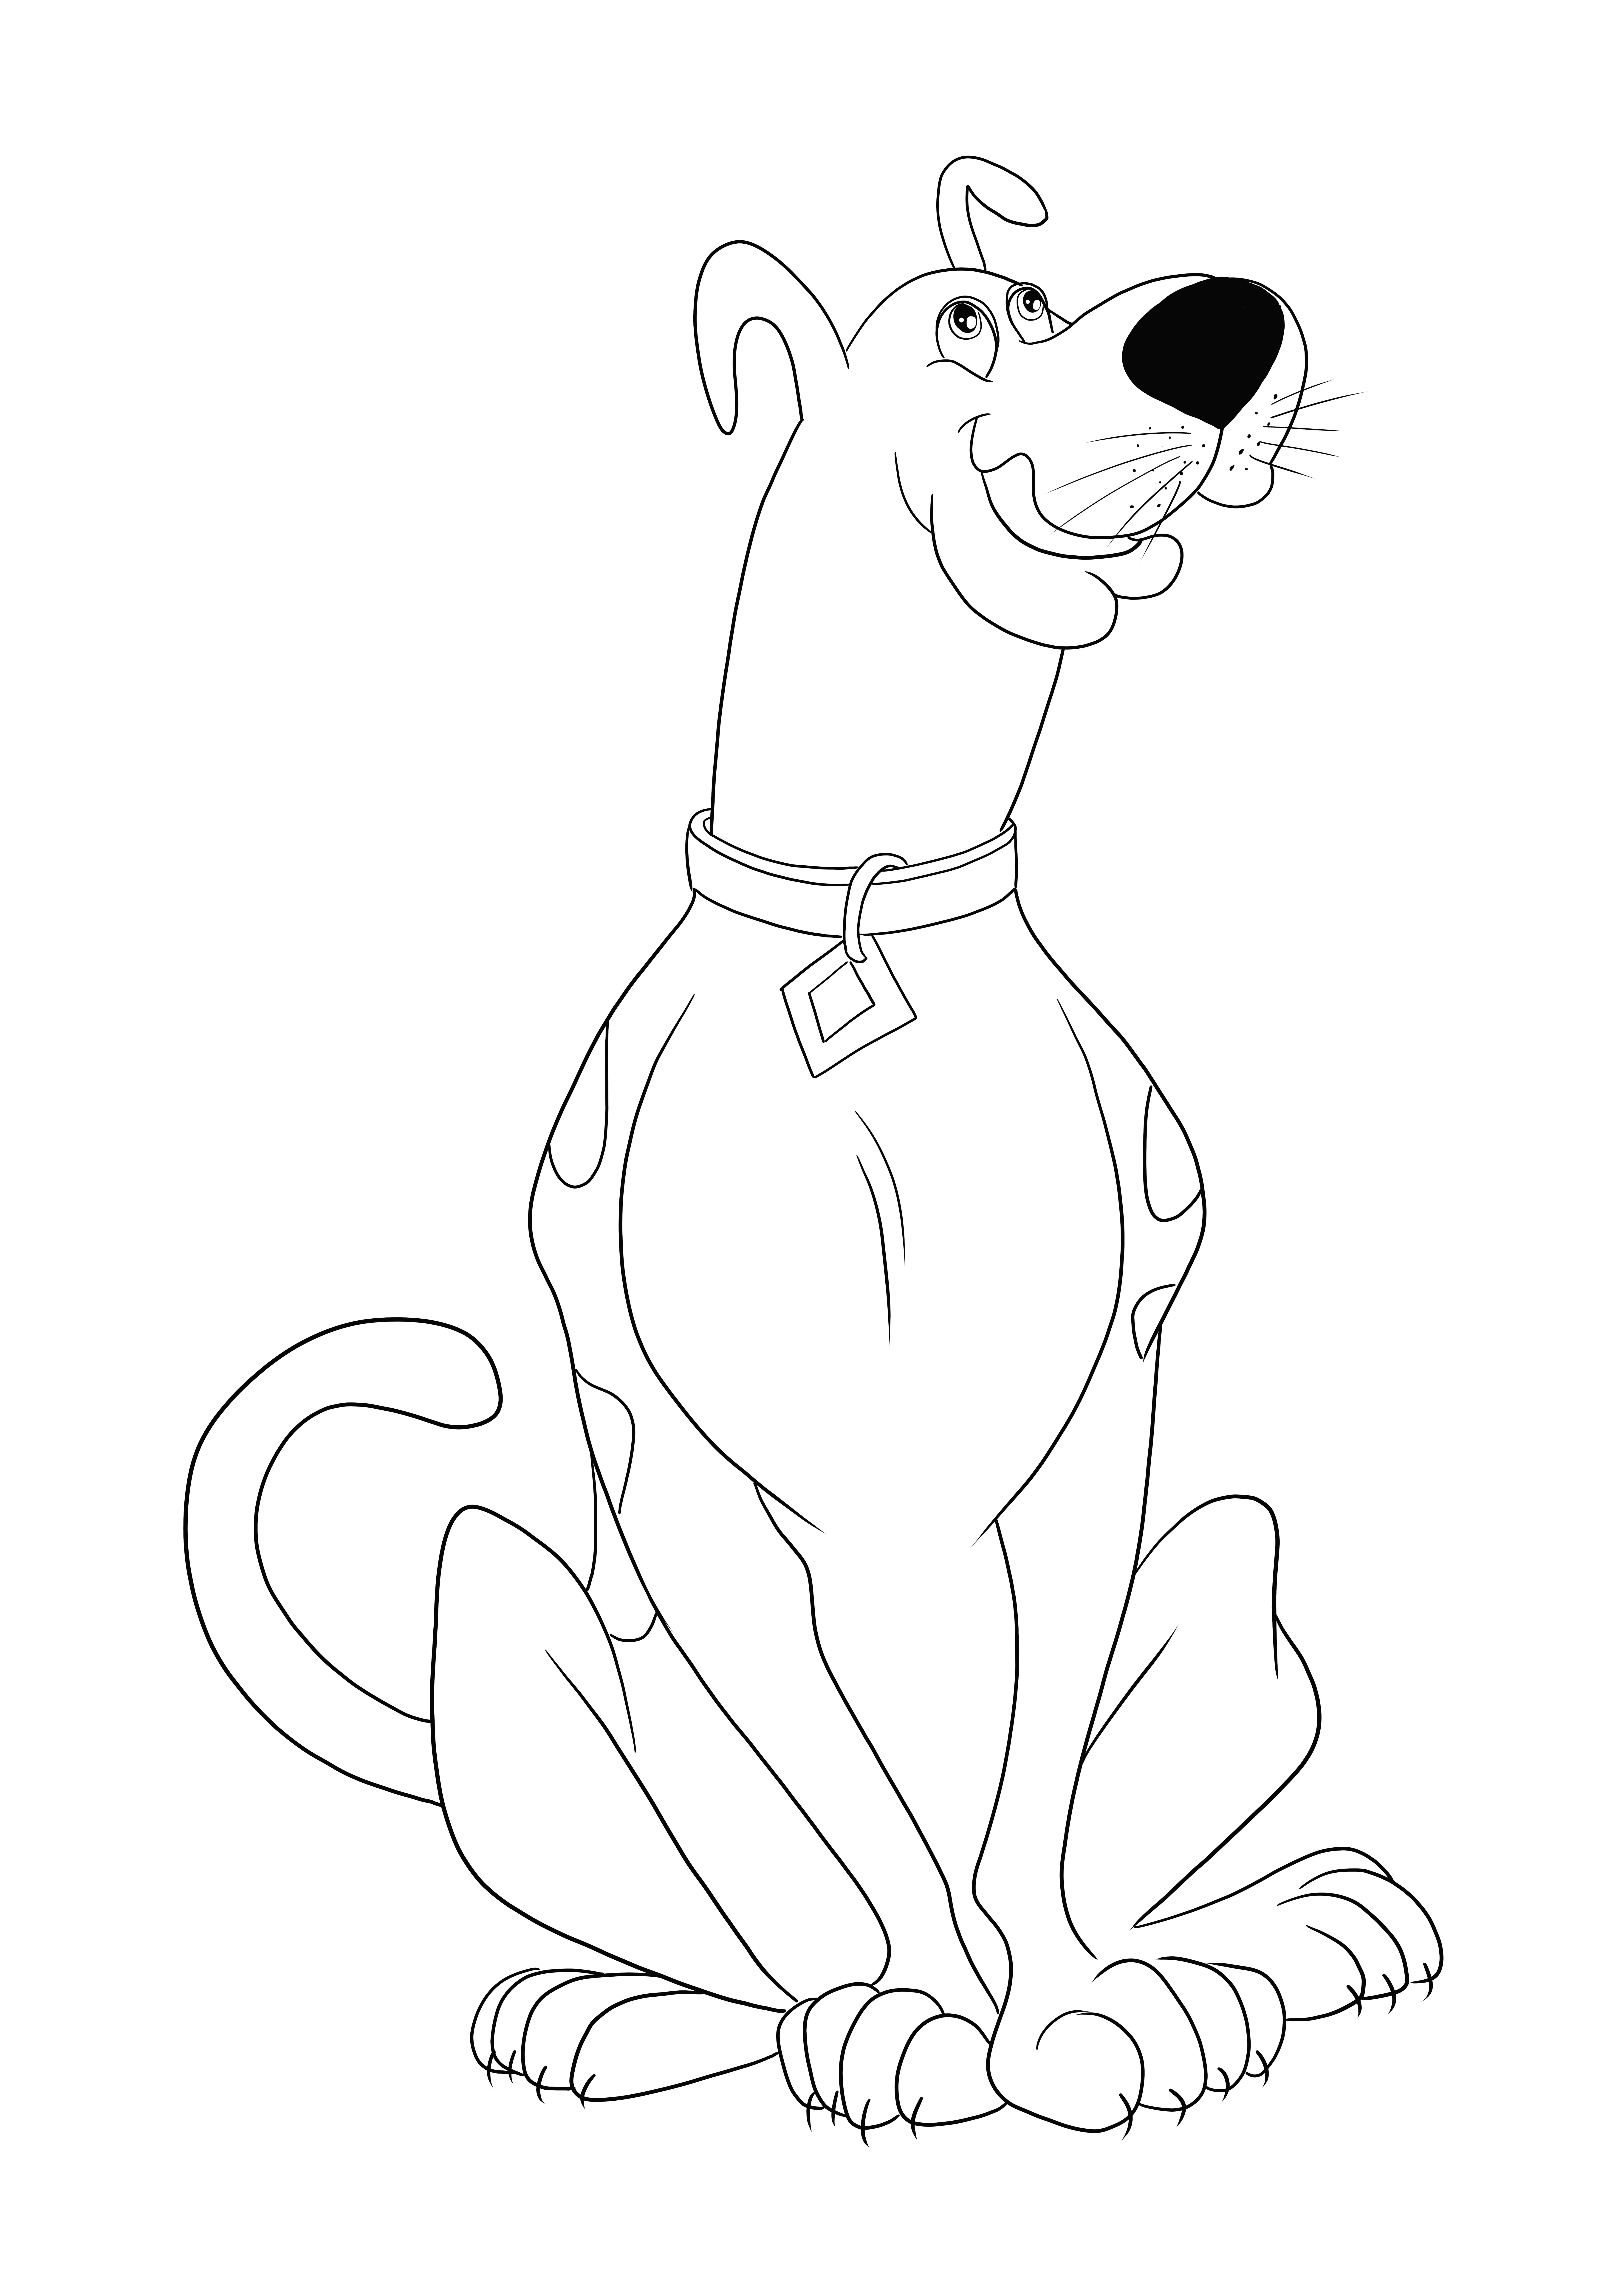 Iată faimoasa noastră desen de colorat Scooby Doo, imprimată sau descărcată gratuită